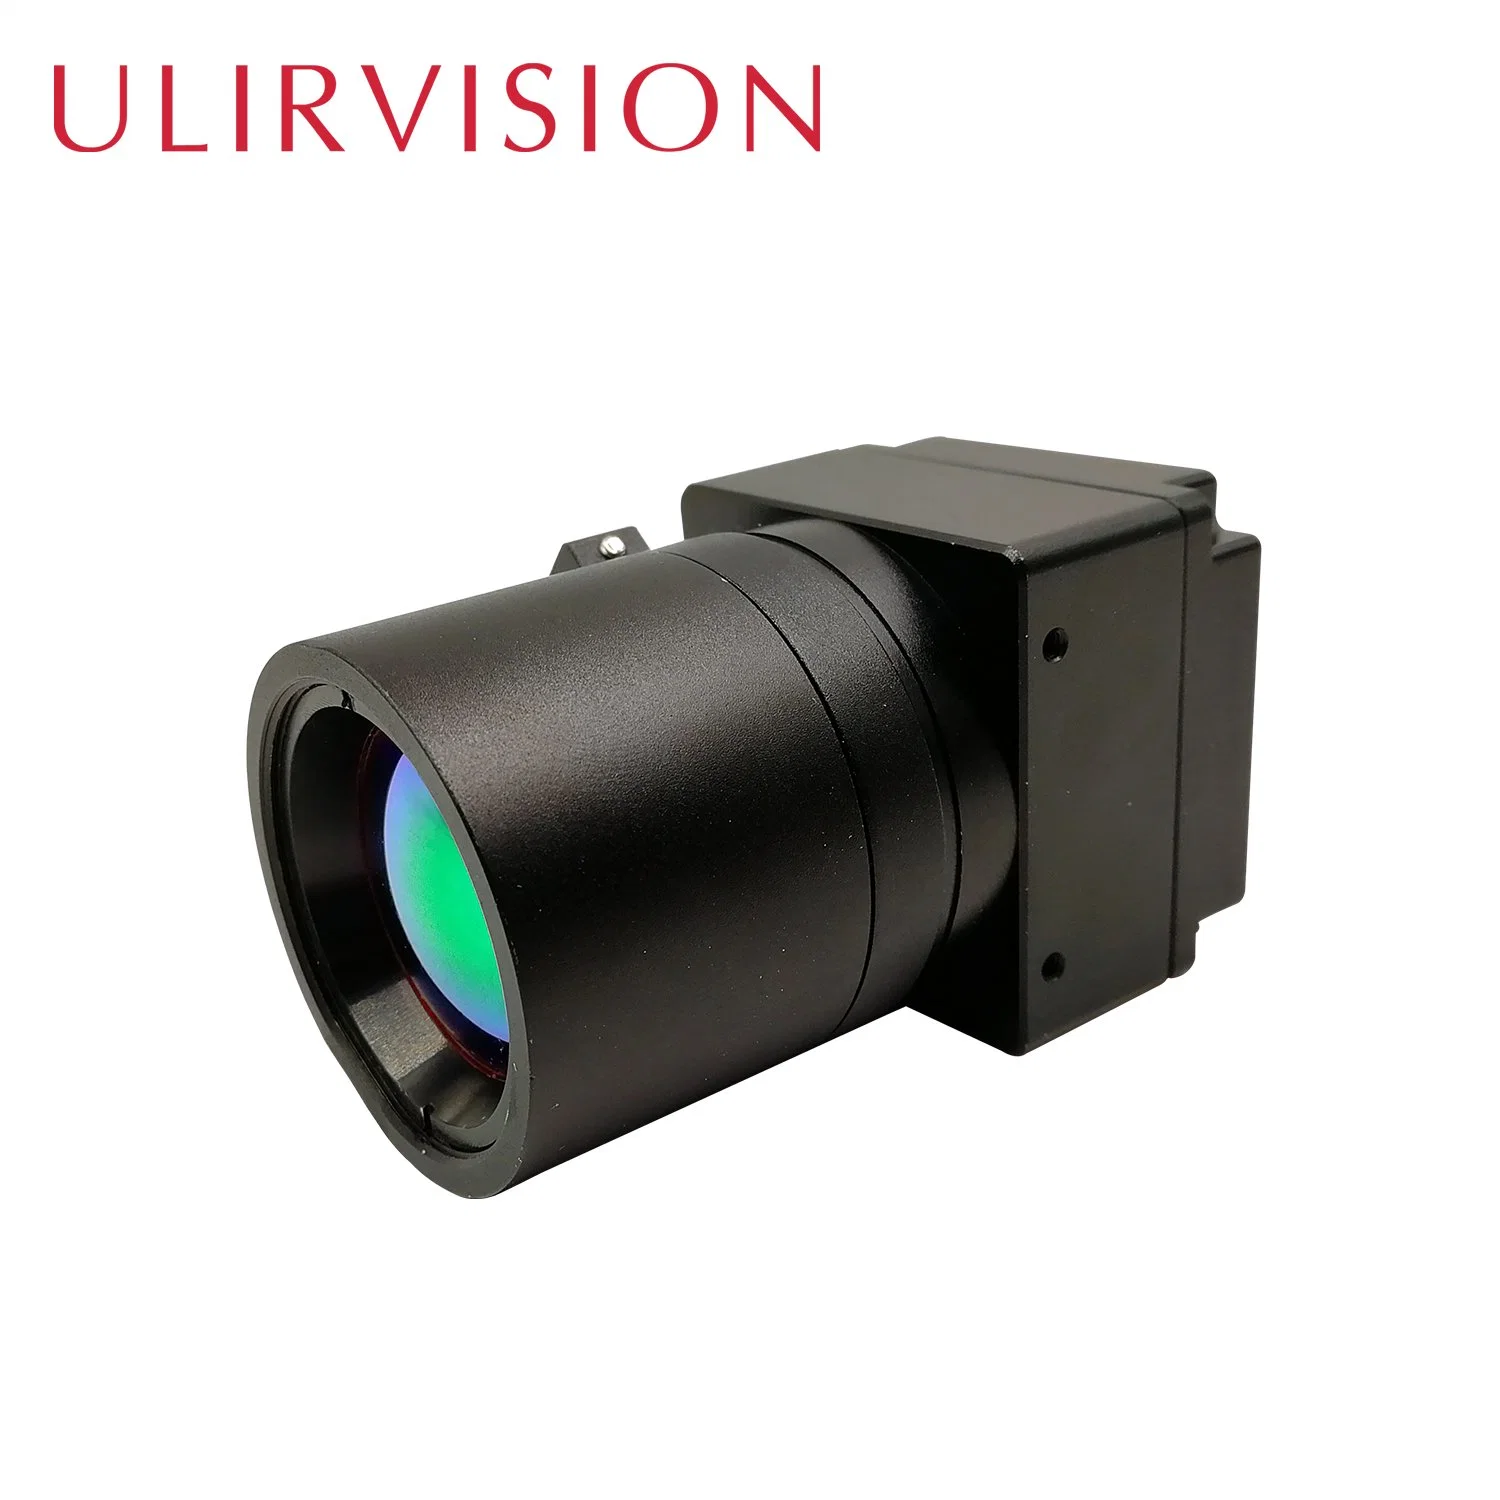 Boa qualidade de Núcleo de câmaras de infravermelhos Moudle térmica TC690/TC390 para integração do sistema de vigilância e de defesa